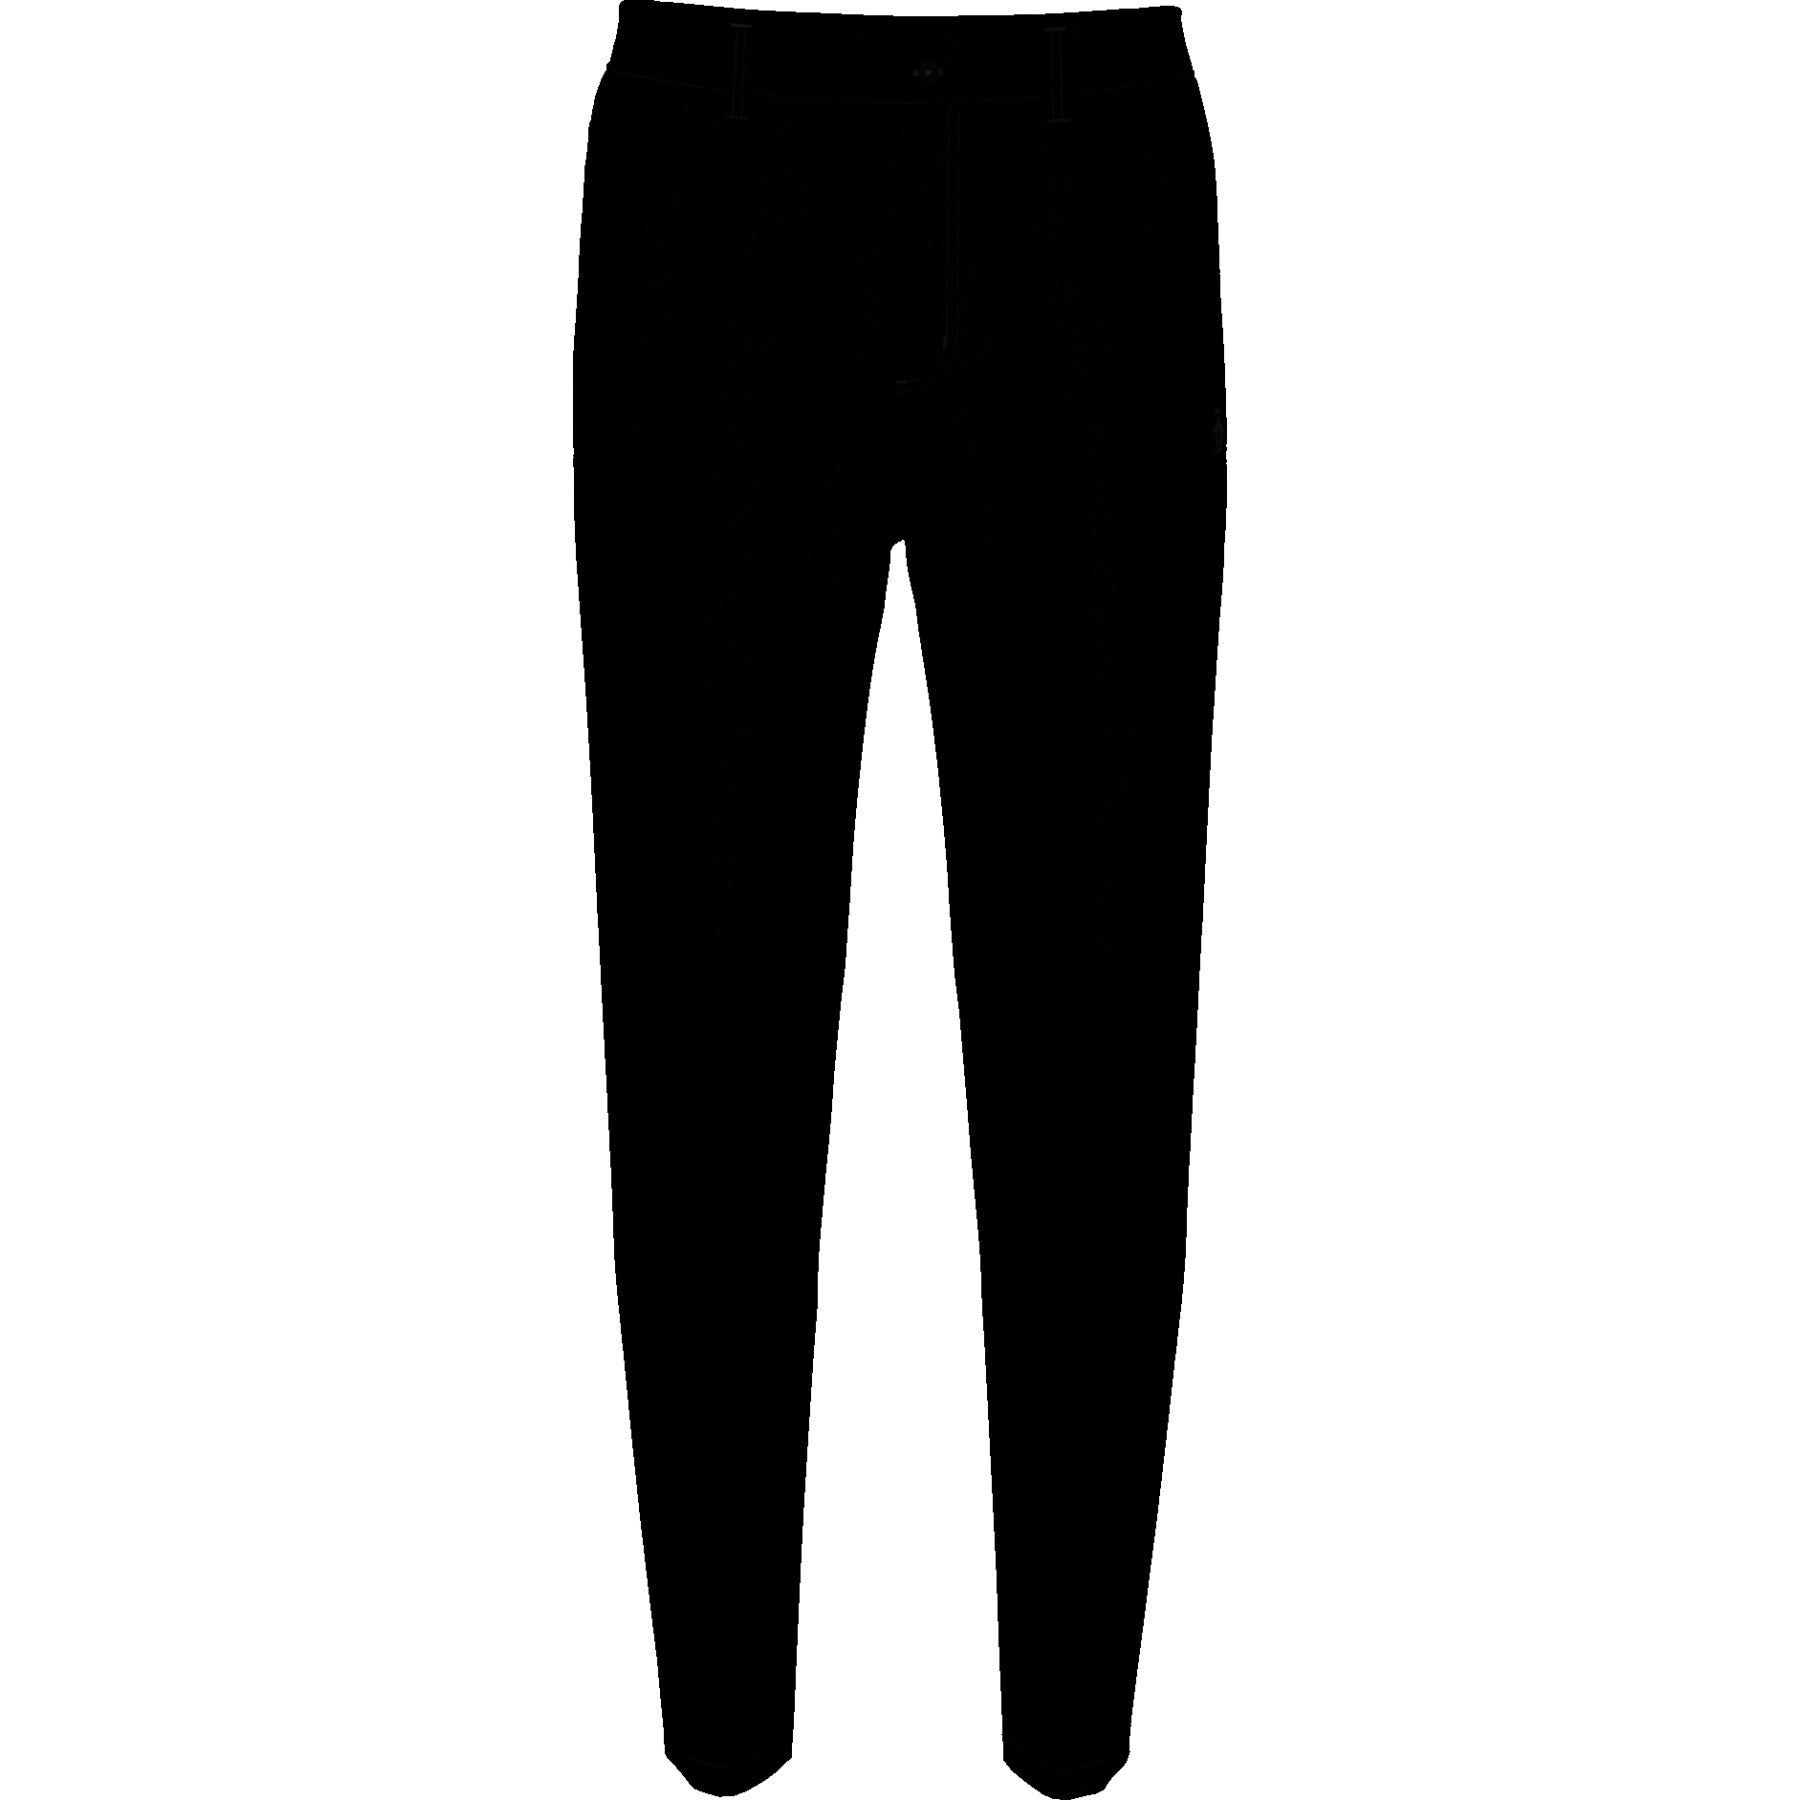 Polar Pete Thermal Golf Trousers In Black | Original Penguin®